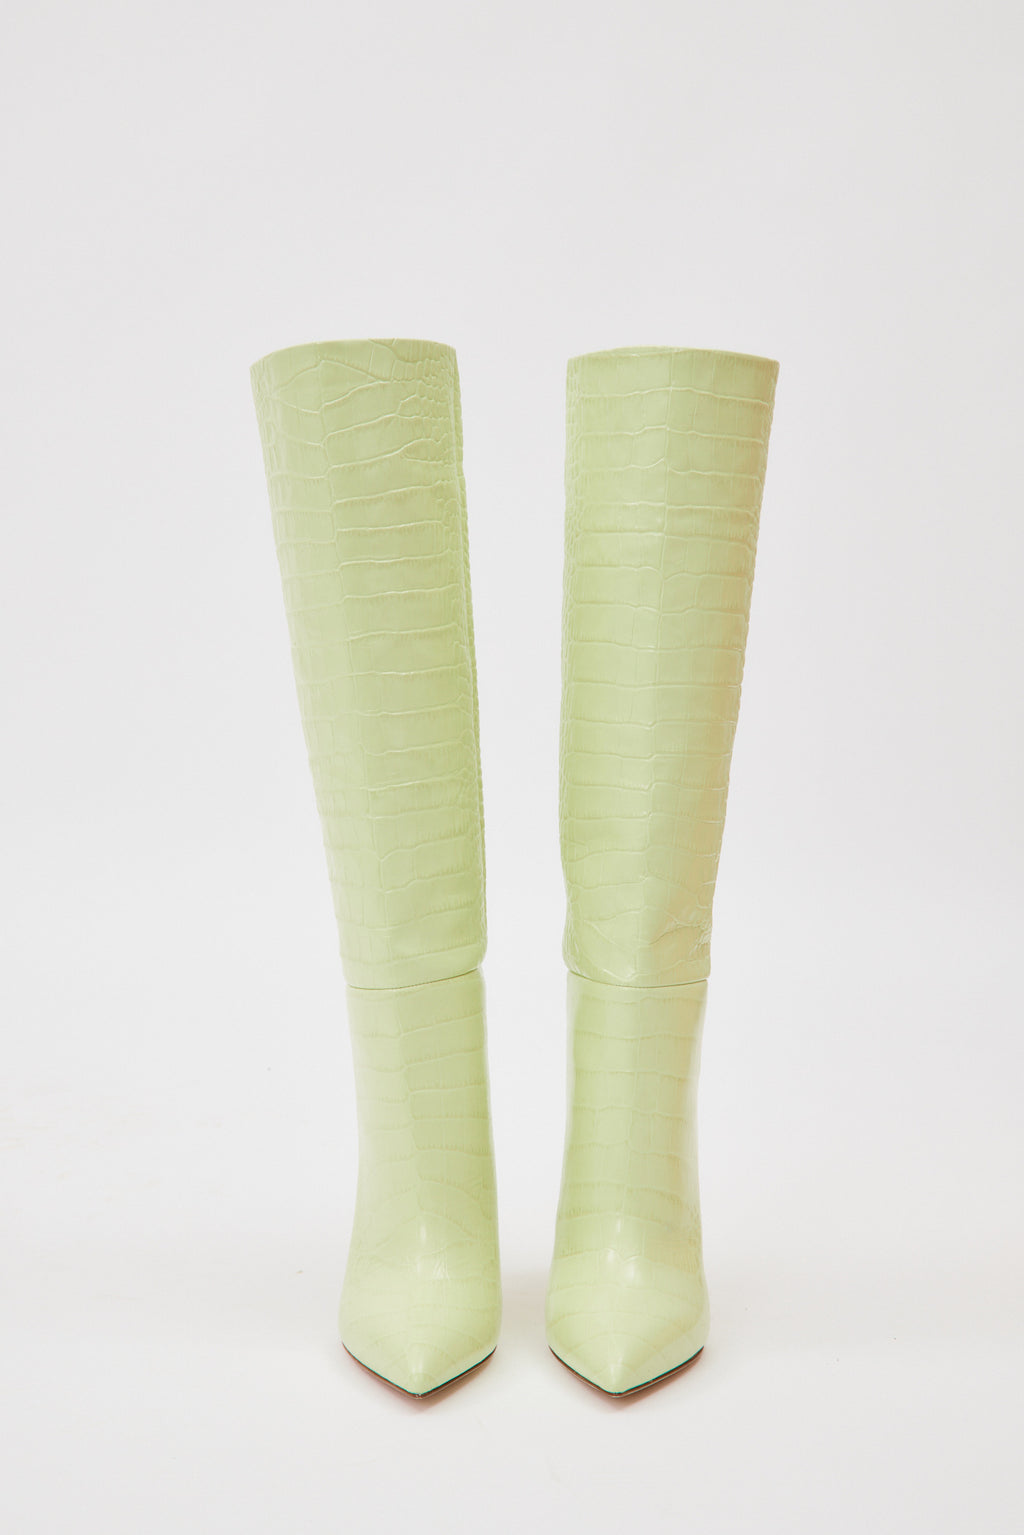 Croco Lime Stiletto Boots